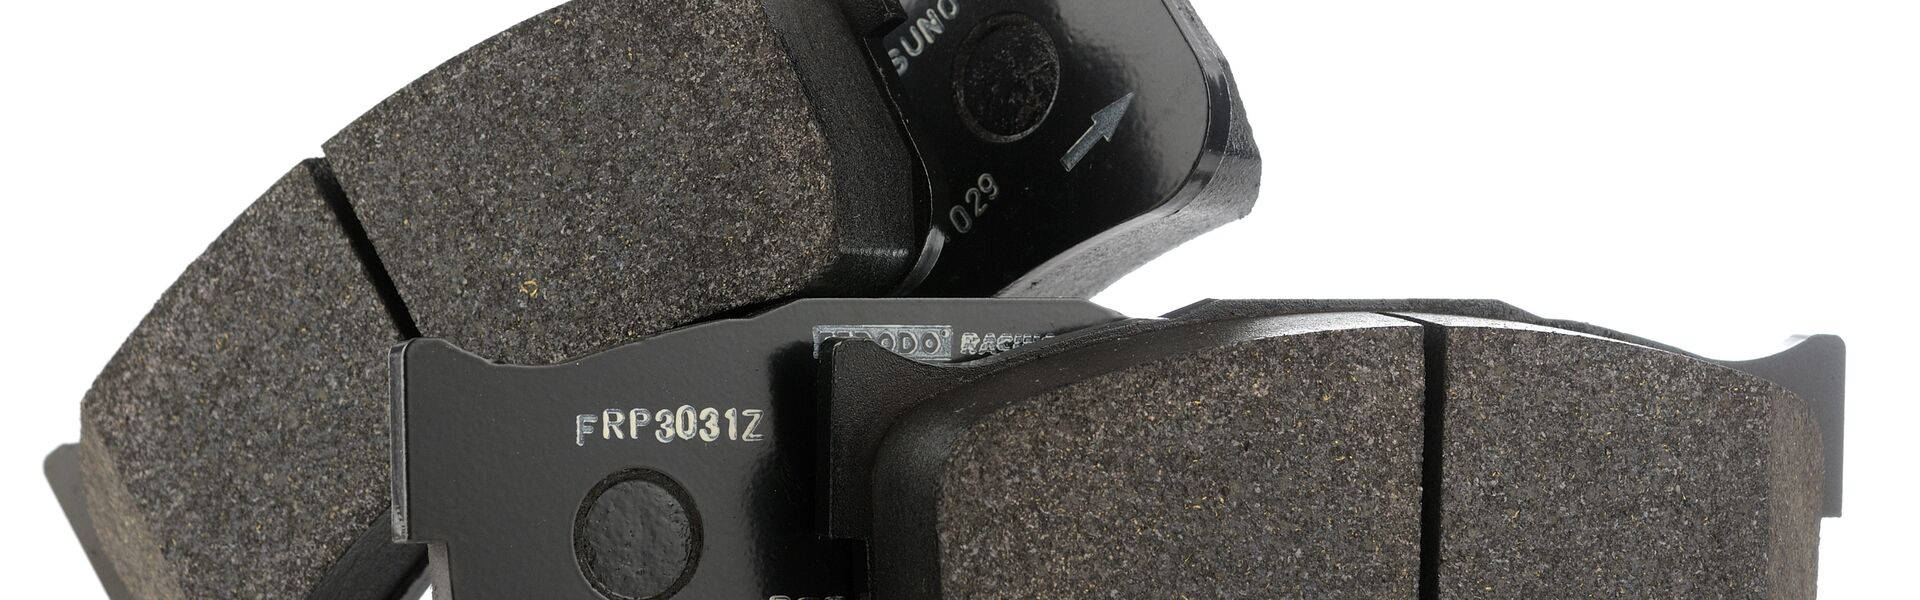 Sada zadních destiček Ferodo DS 2500 - náhrada za OEM sériové destičky